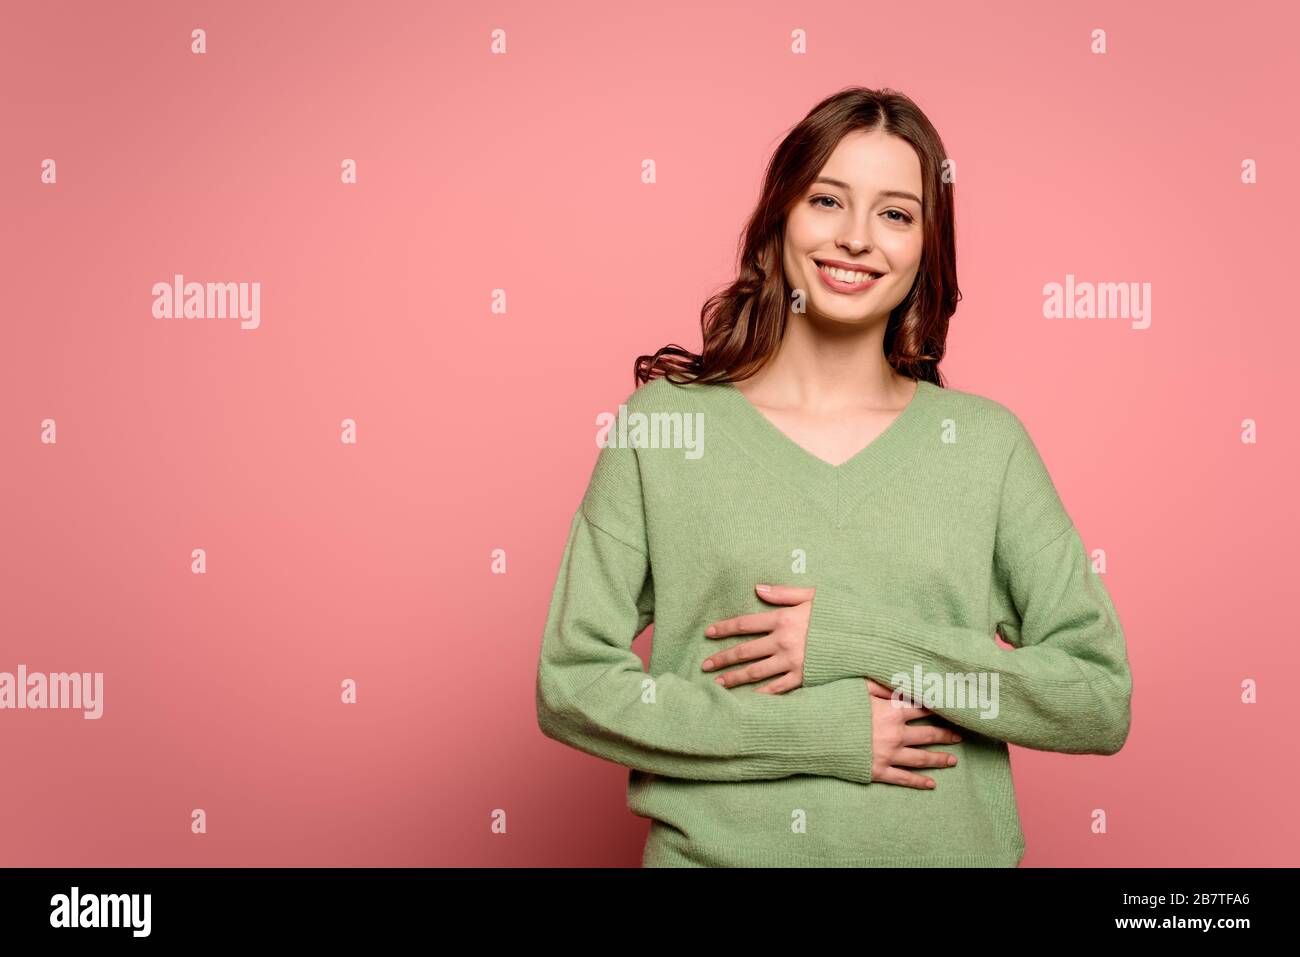 Aufgeregtes Mädchen lacht, während es die Hände auf dem Bauch auf rosa Hintergrund hält Stockfoto